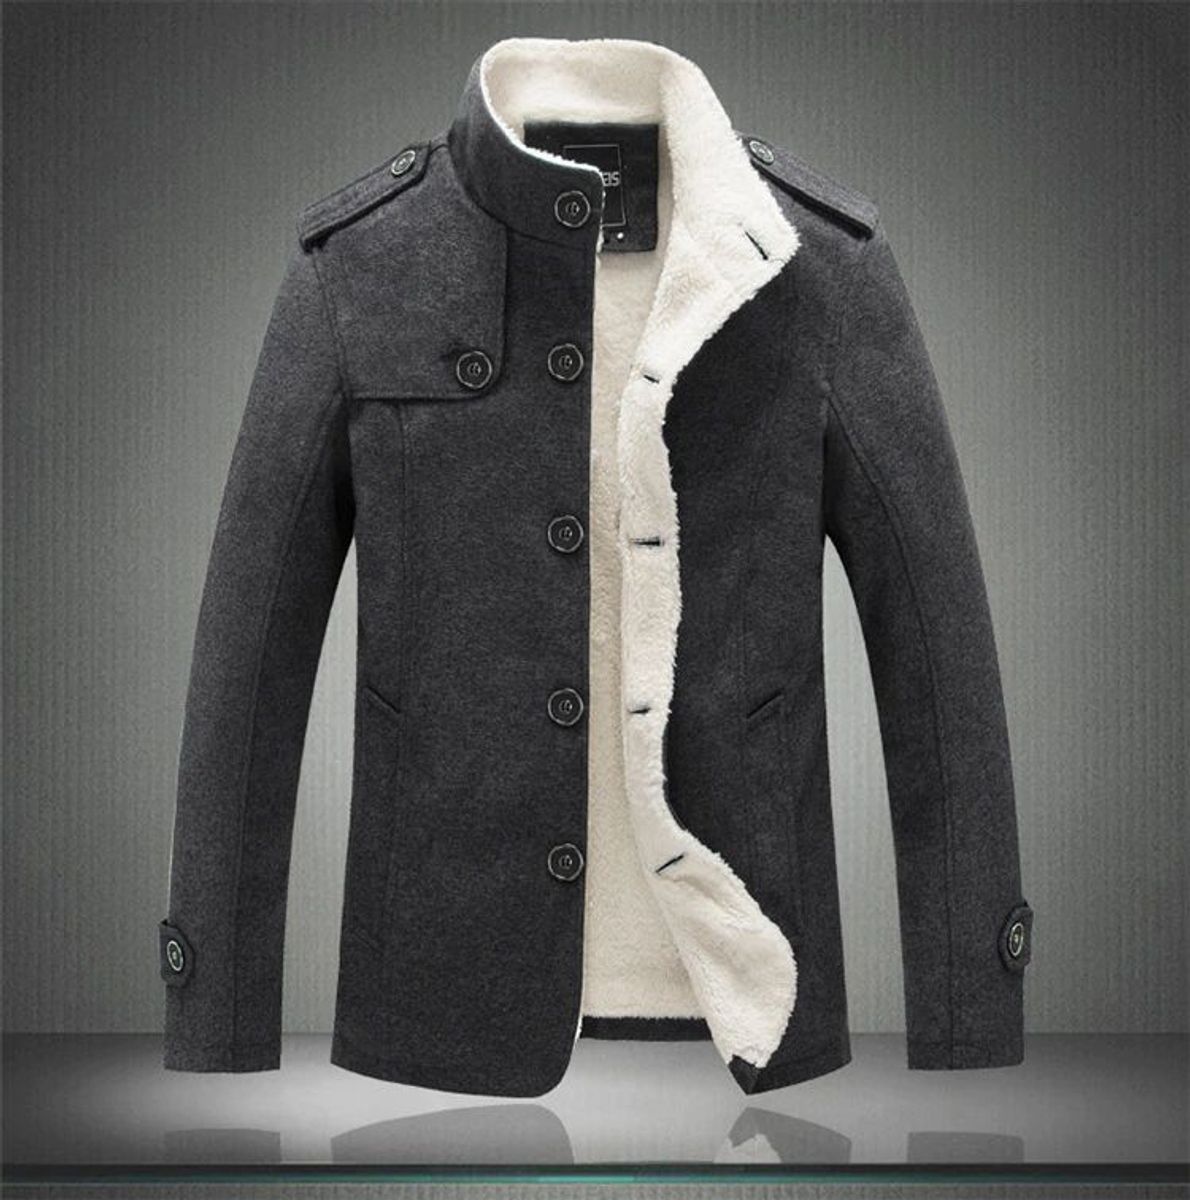 jaqueta masculina com forro de lã